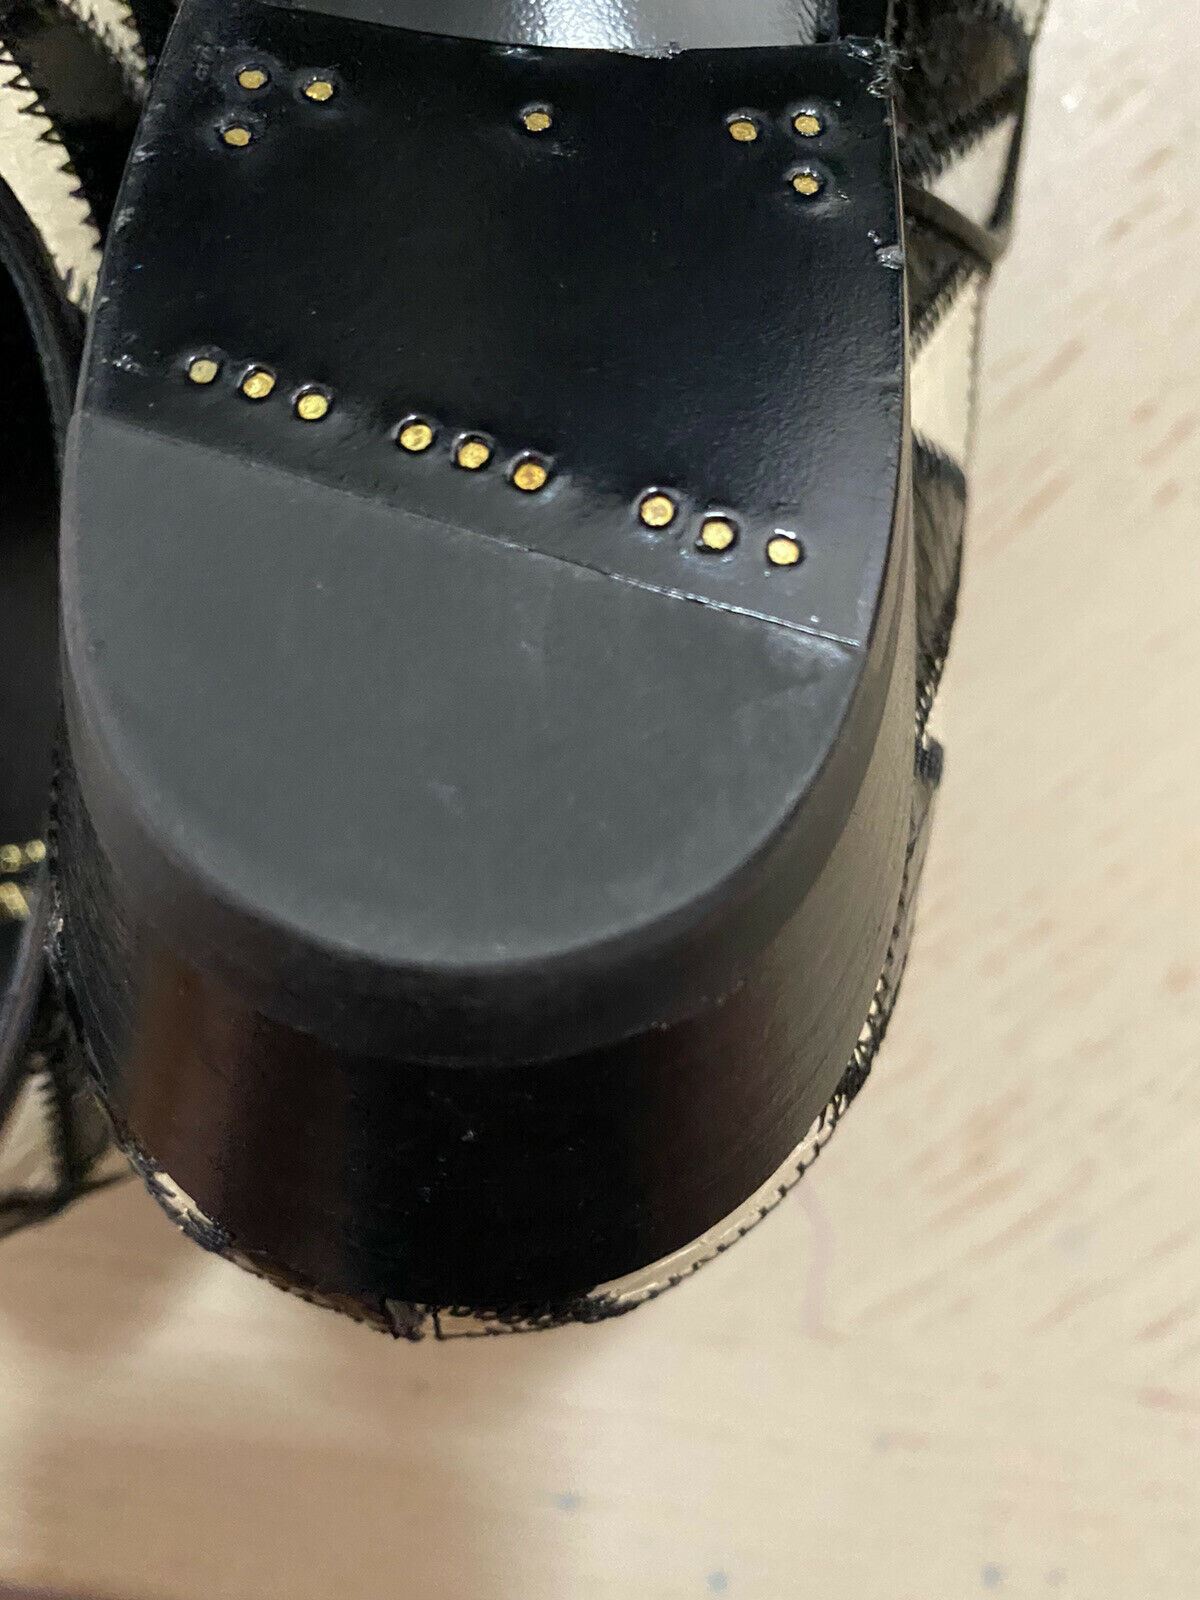 NIB $1795 Saint Laurent Женские туфли из кожи питона Черный/Слоновая кость 7,5 США/37,5 ЕС